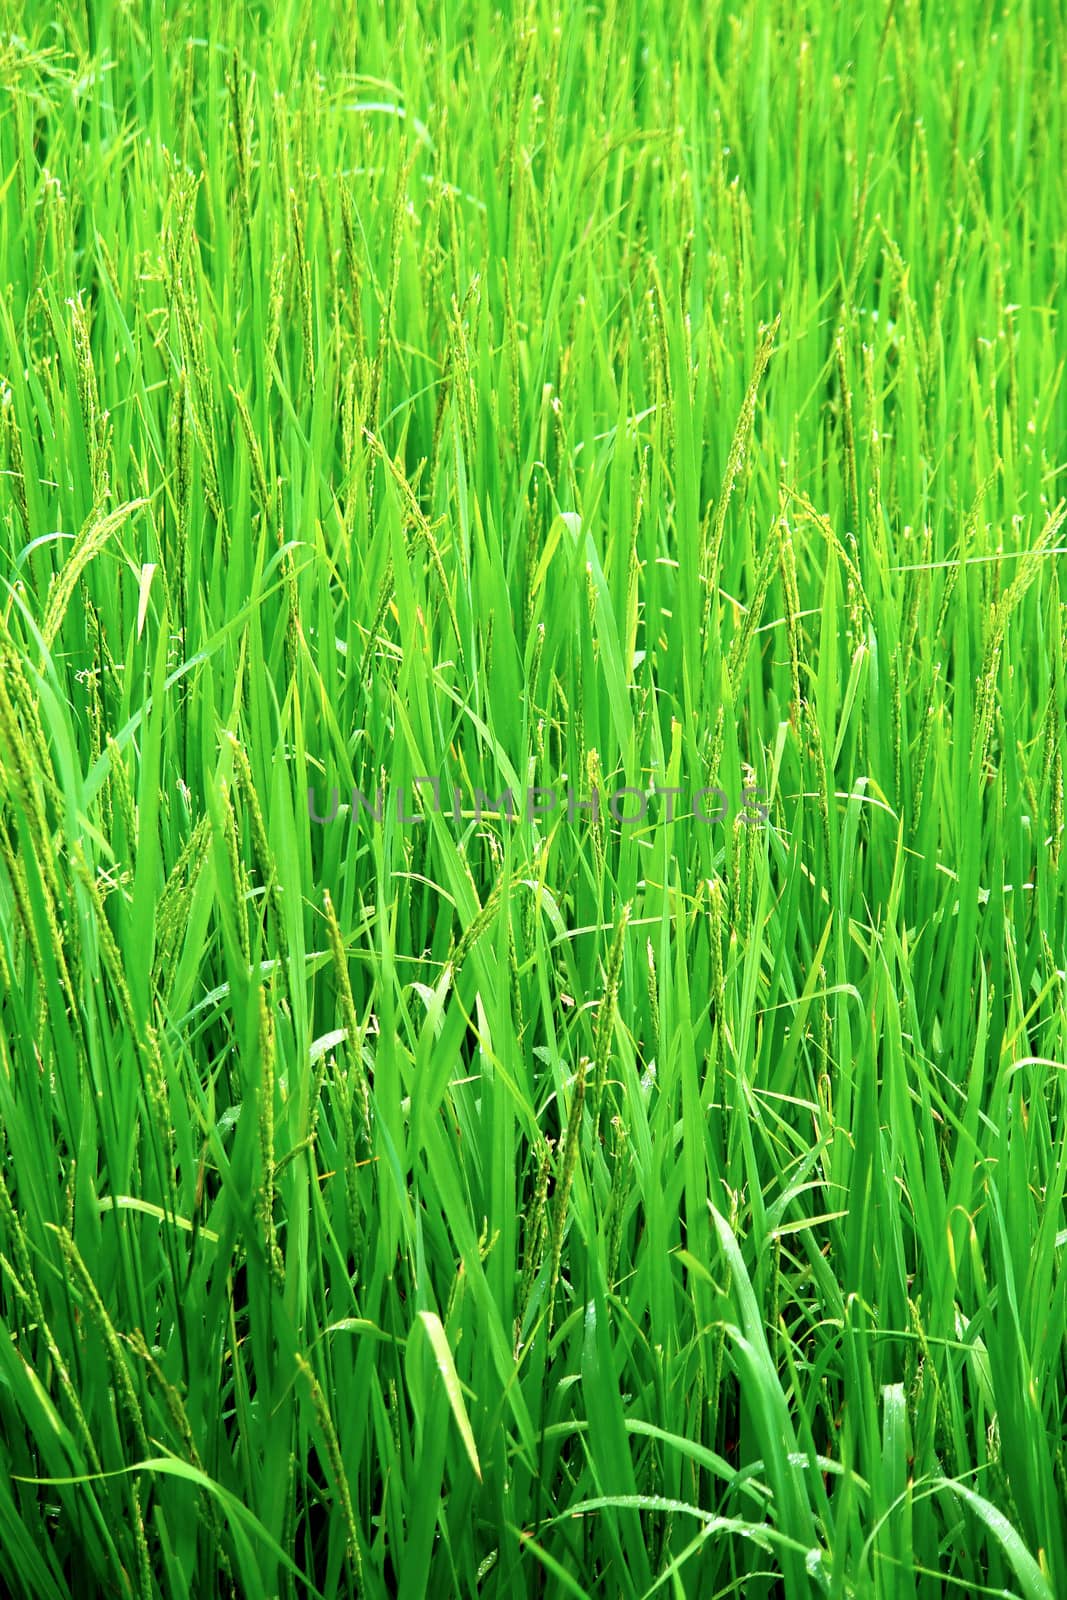 Green rice field texture wallpaper, Nepal